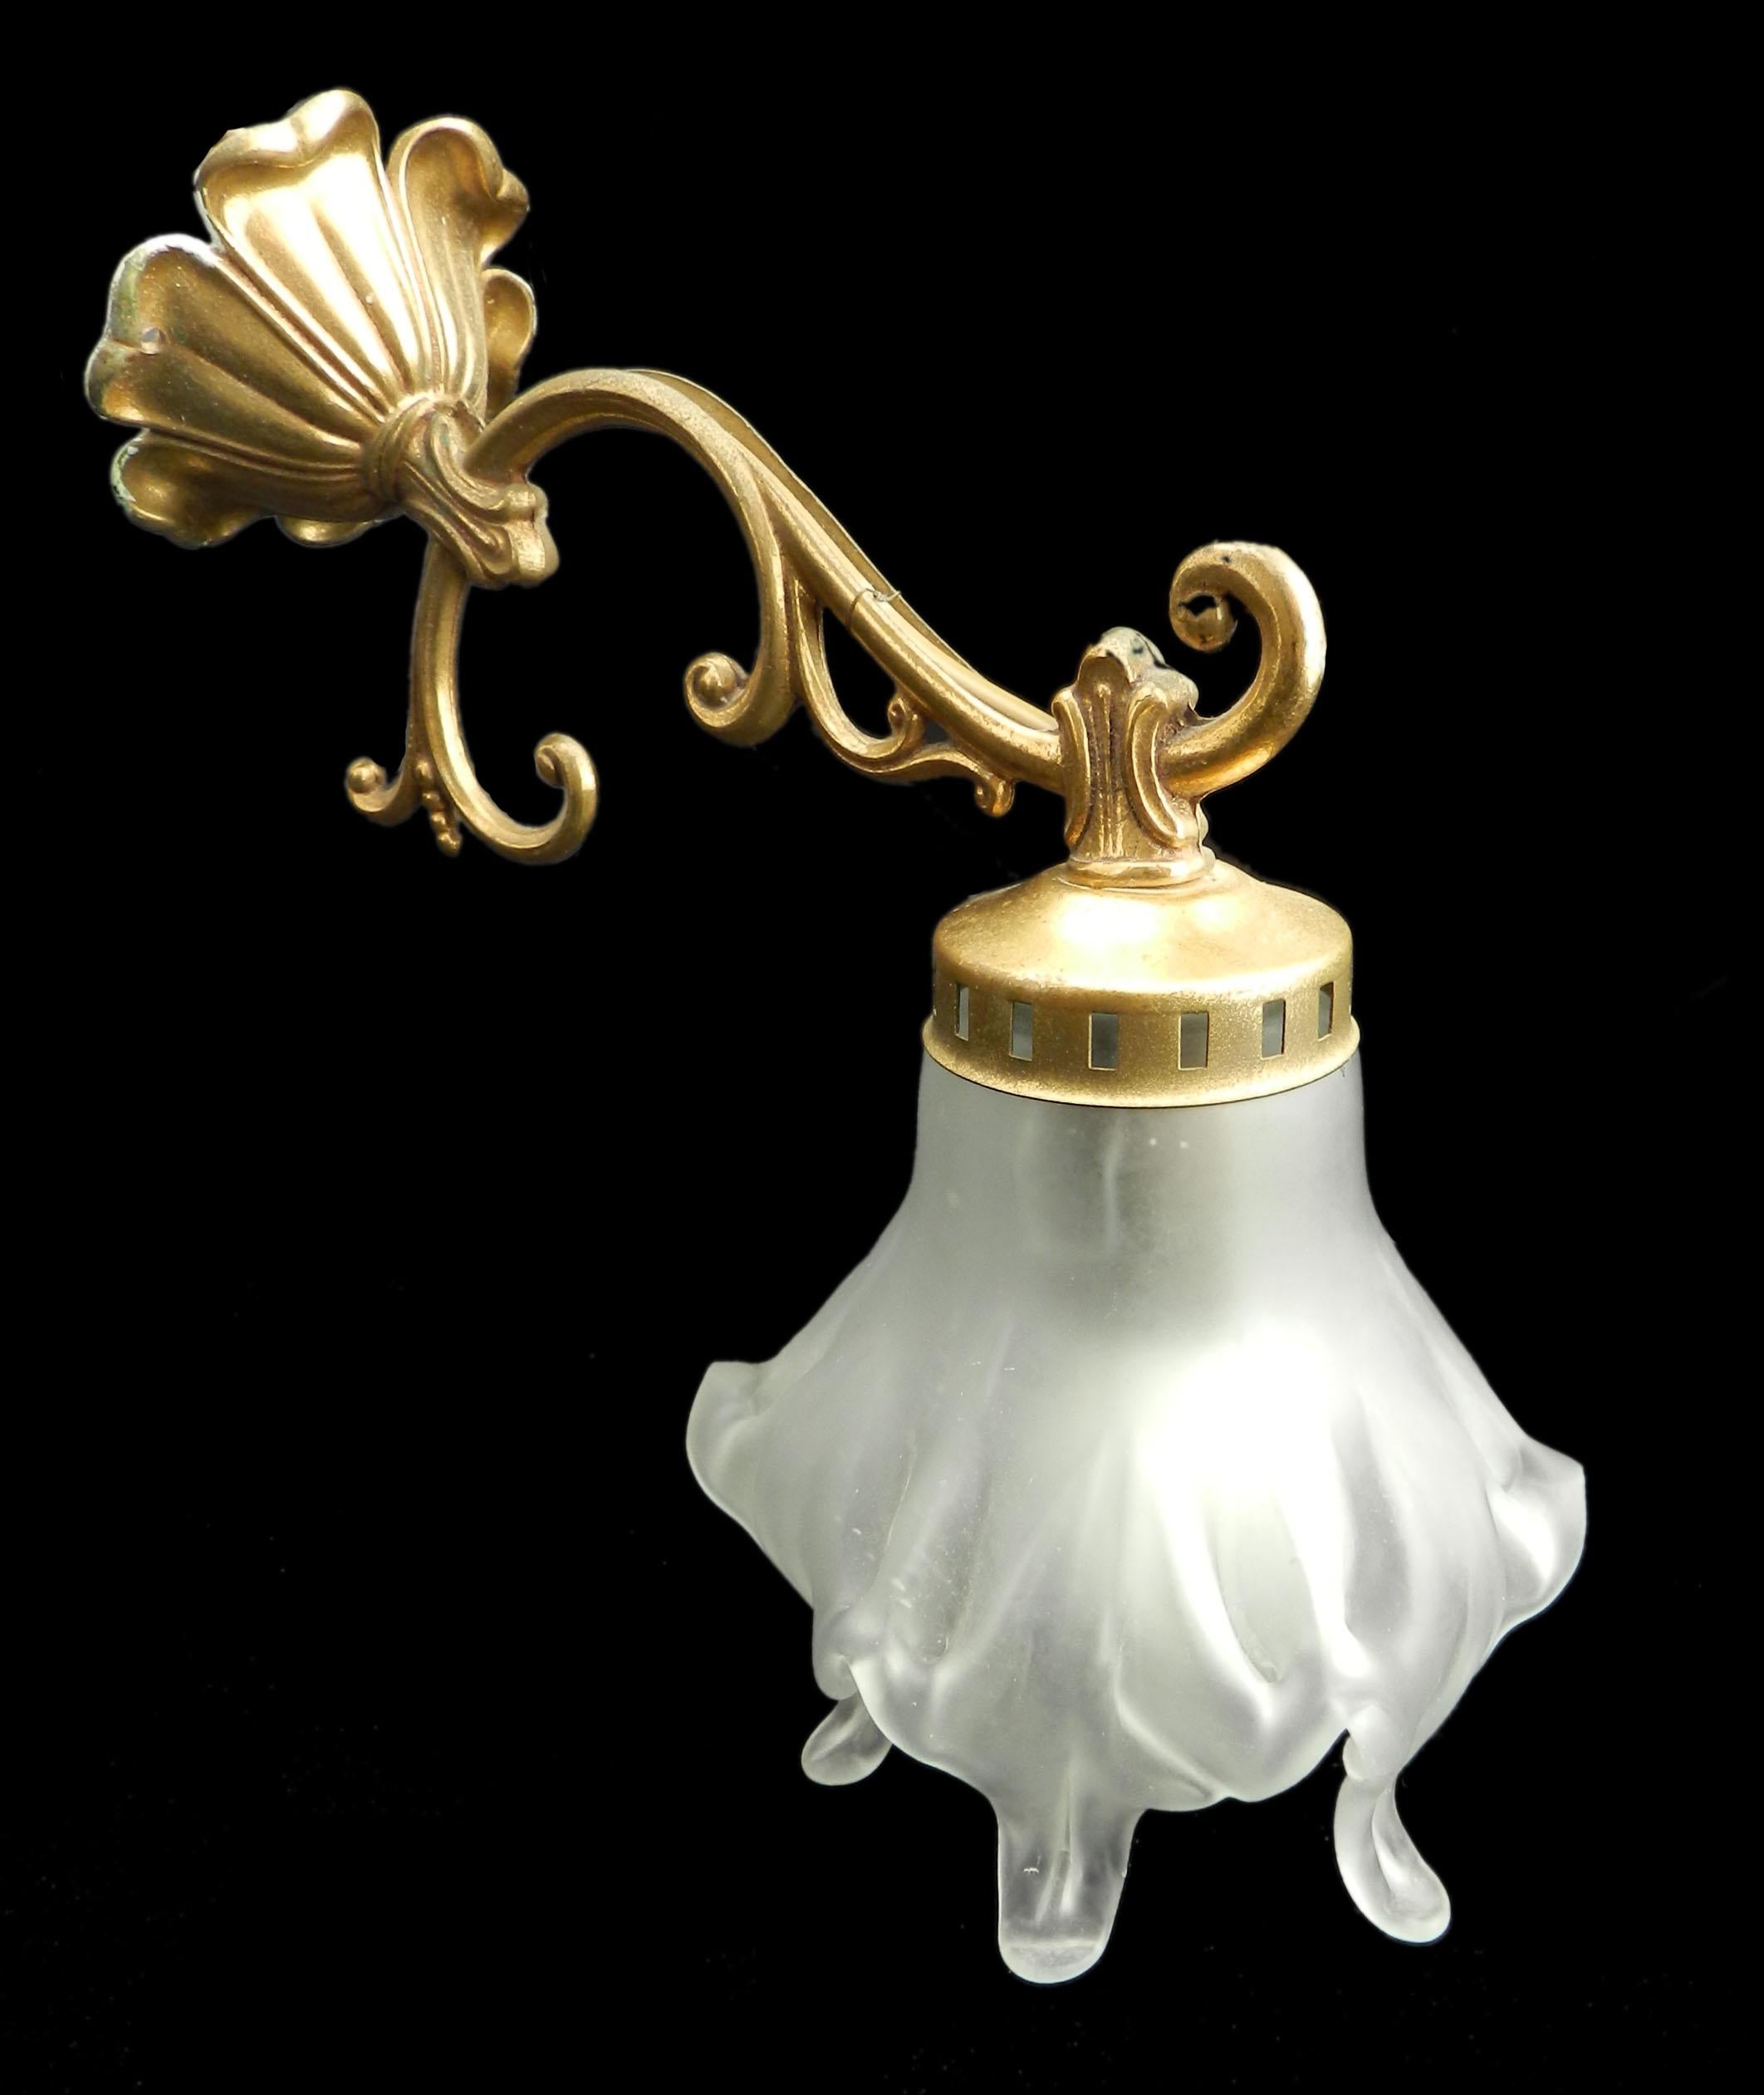 Solo Wandleuchte Louis XV Revival, Mitte des 20. Jahrhunderts
Kleine Leuchte mit gutem Glasschirm mit einem sehr kleinen Fleck auf nicht sehr sichtbar
Das Gerät wird neu verkabelt und nach den Normen der USA oder des Vereinigten Königreichs und